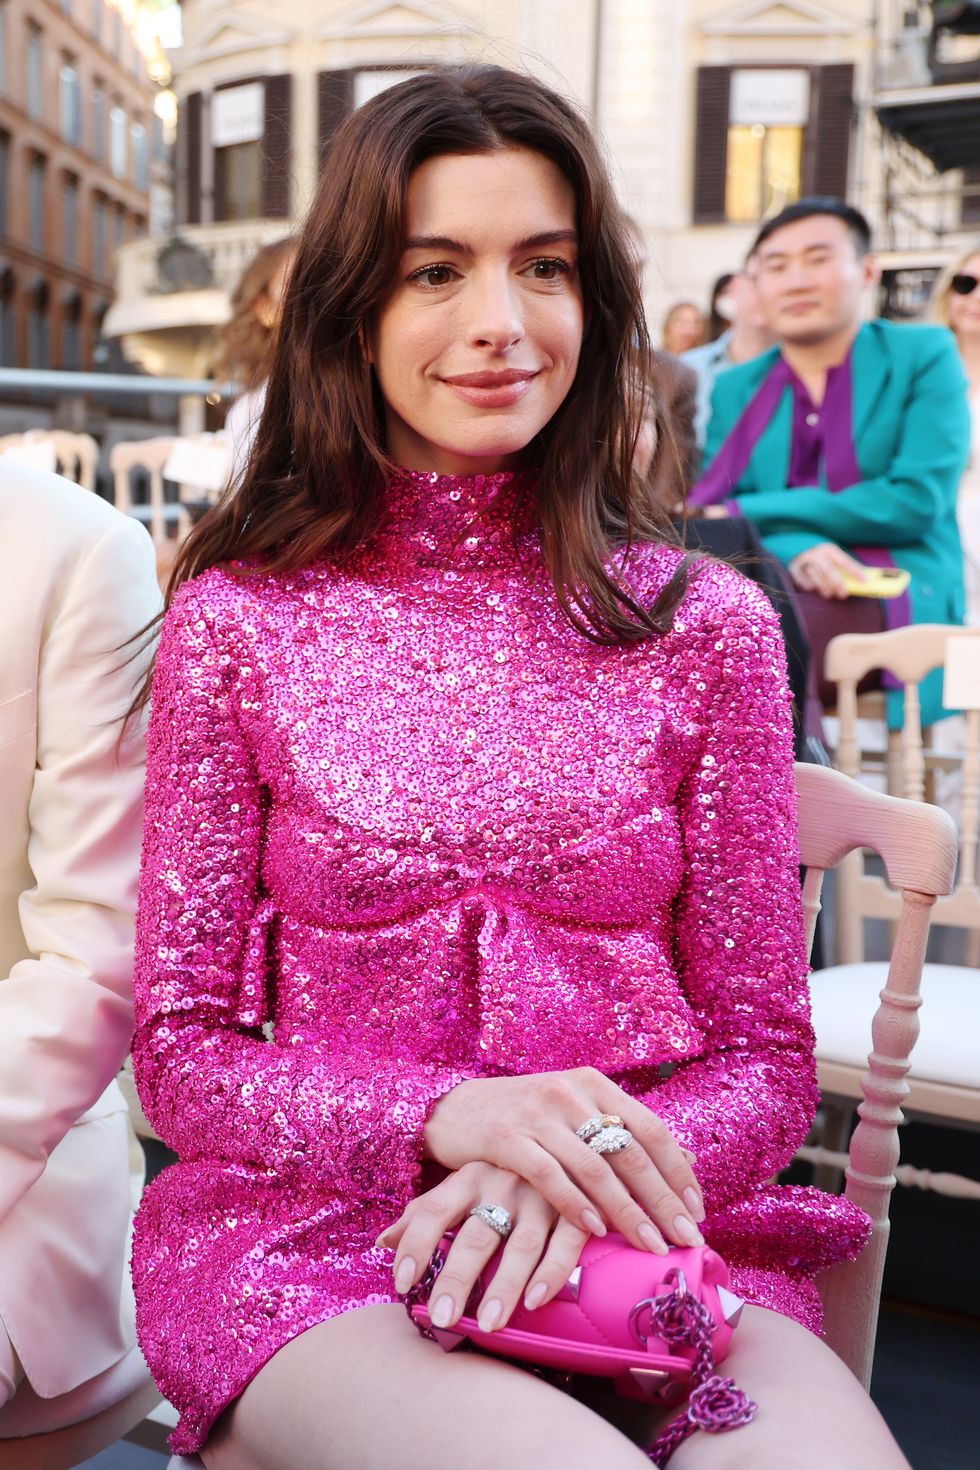 Anne Hathaway Looks Divine in Sparkling Hot Pink Minidress